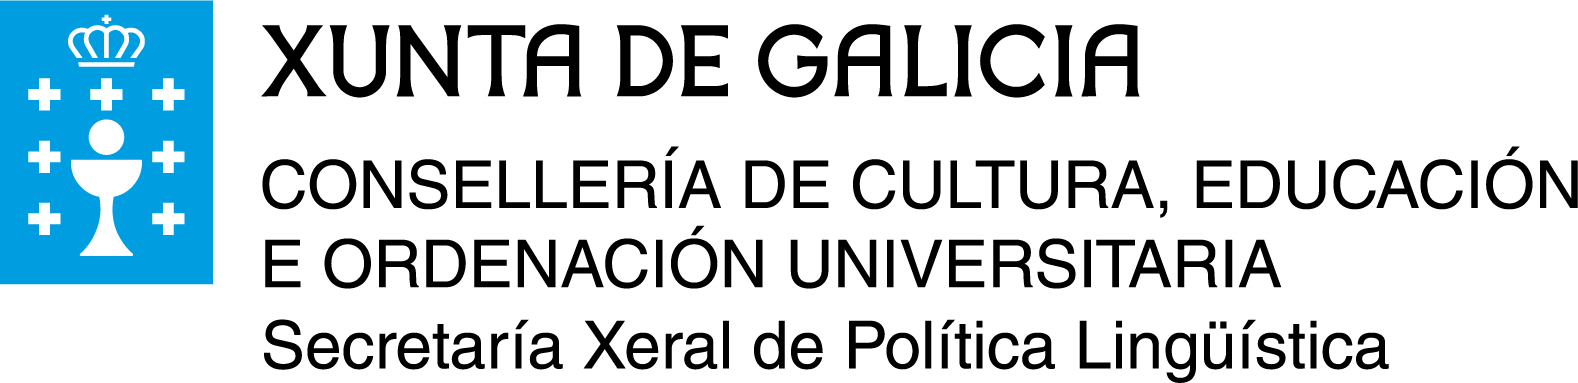 Logo sxpl cor